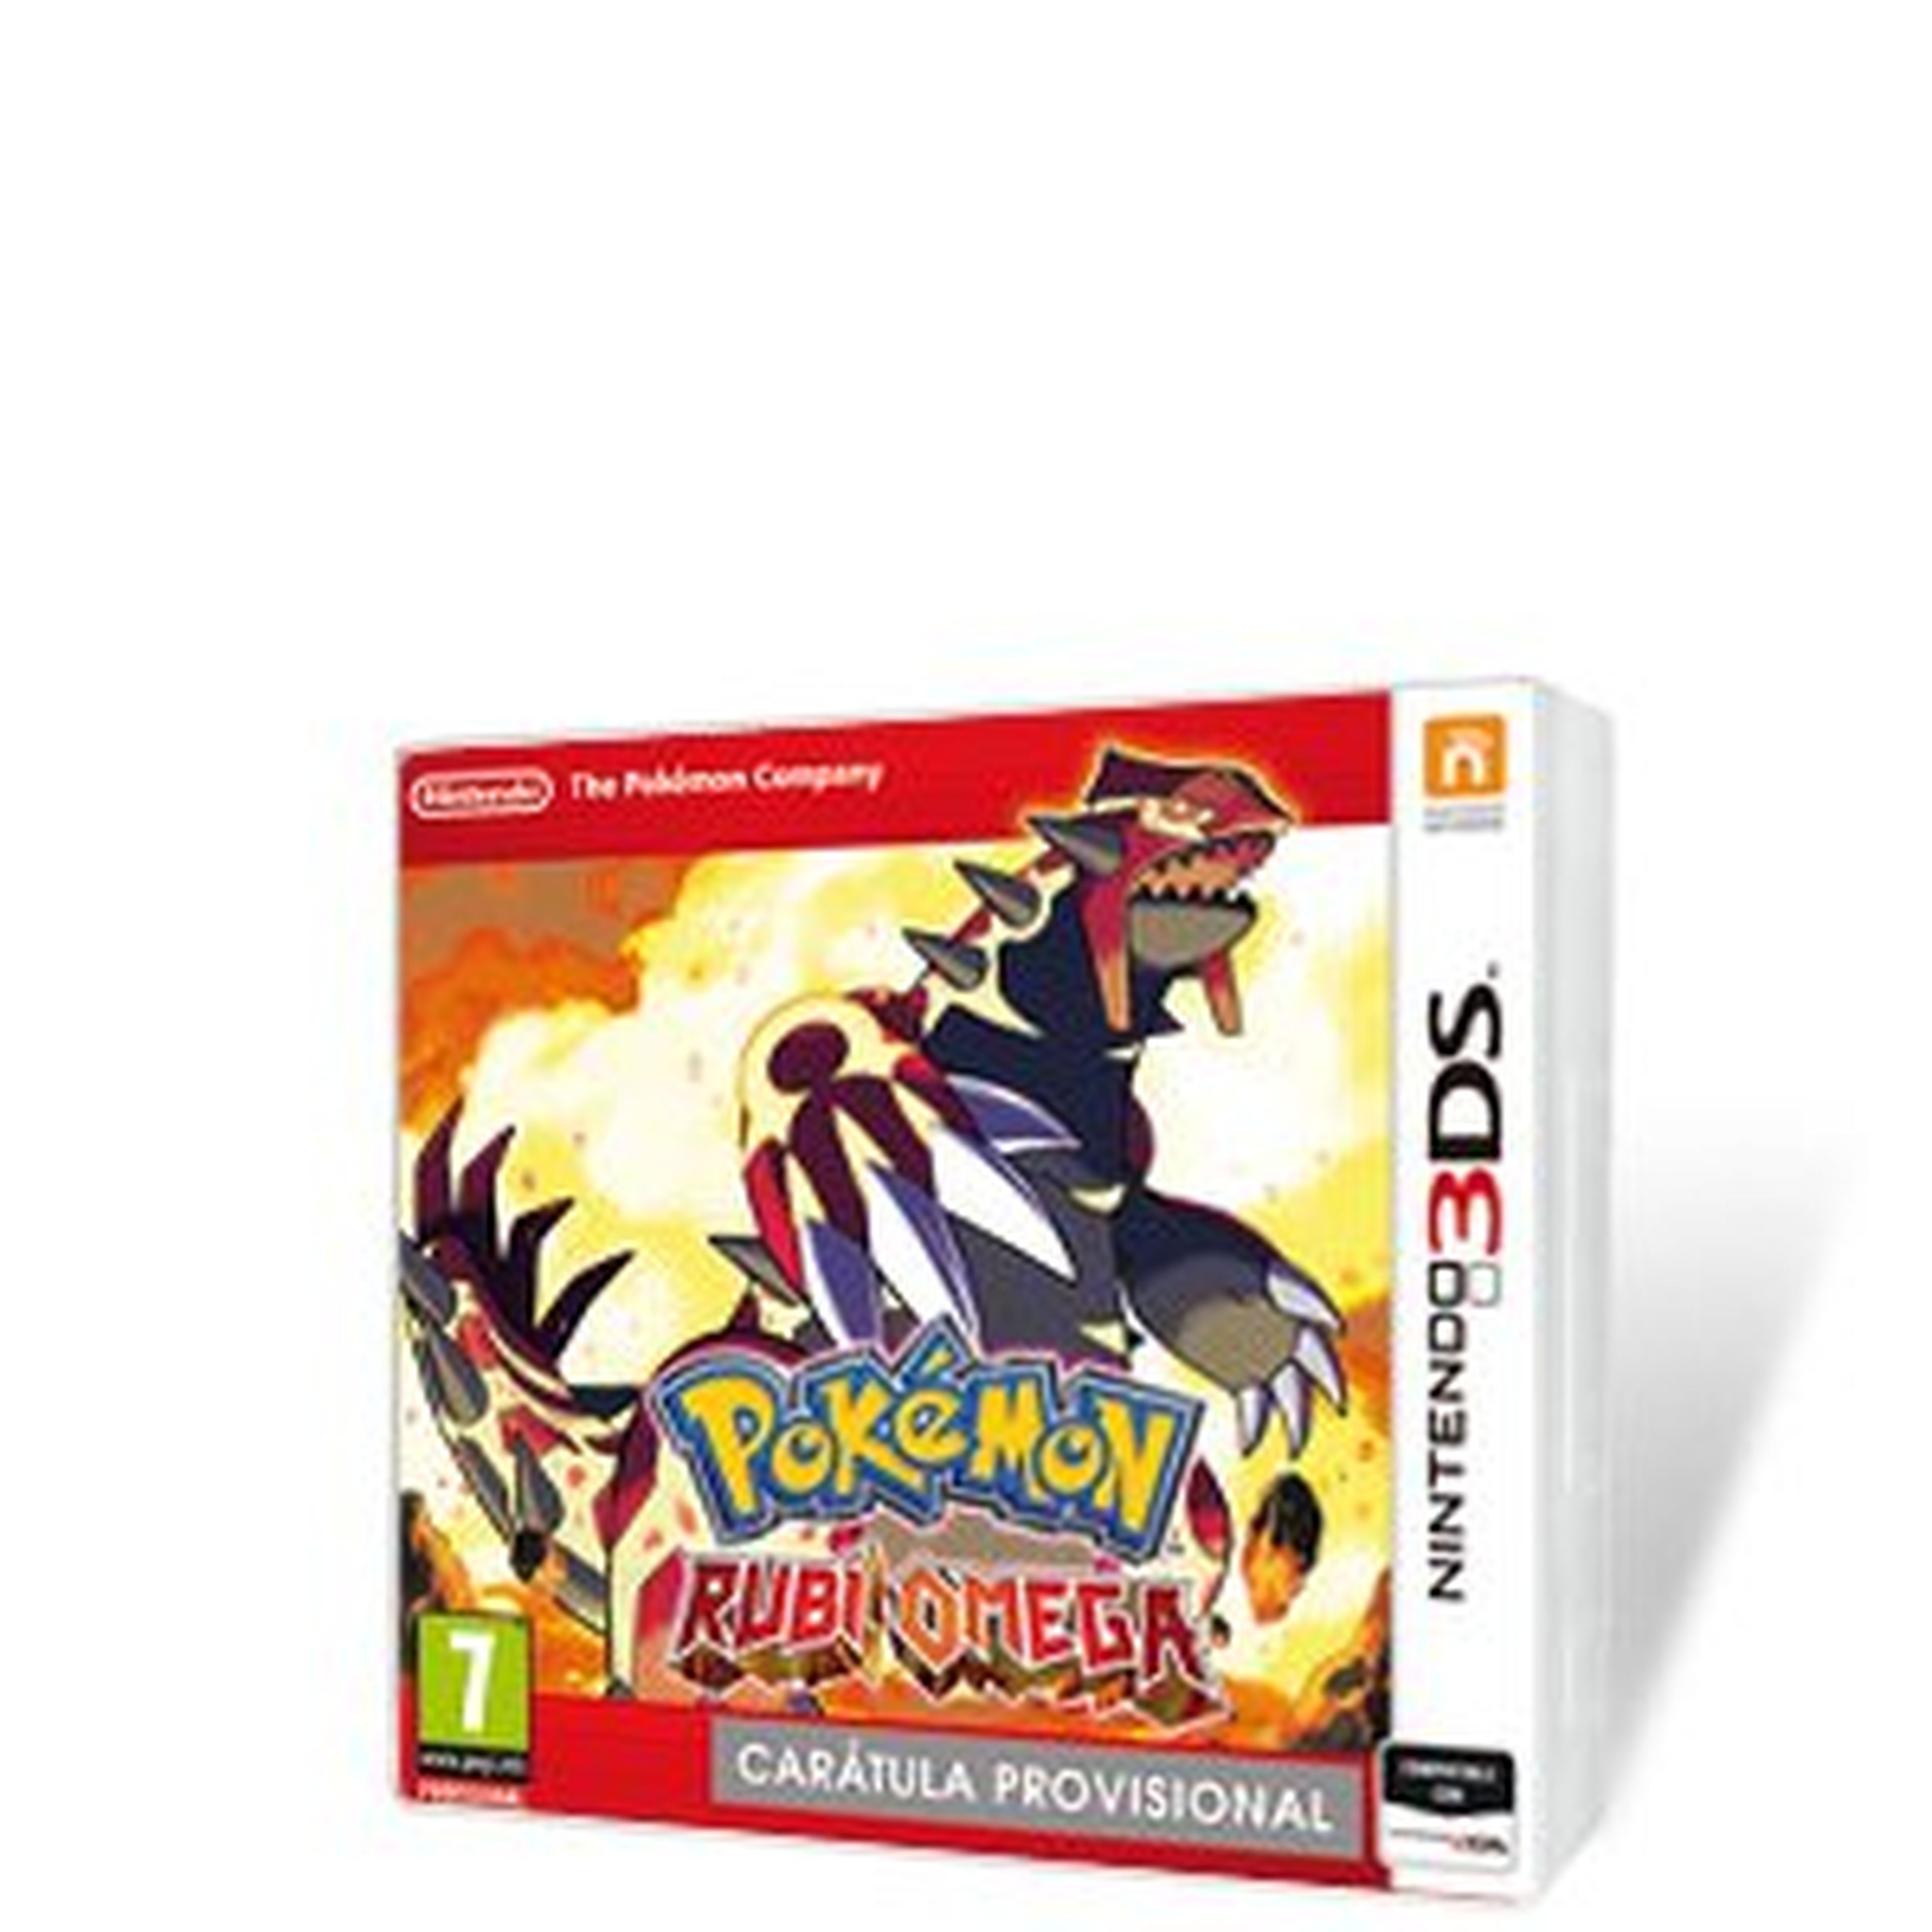 Pokémon Rubí Omega para 3DS